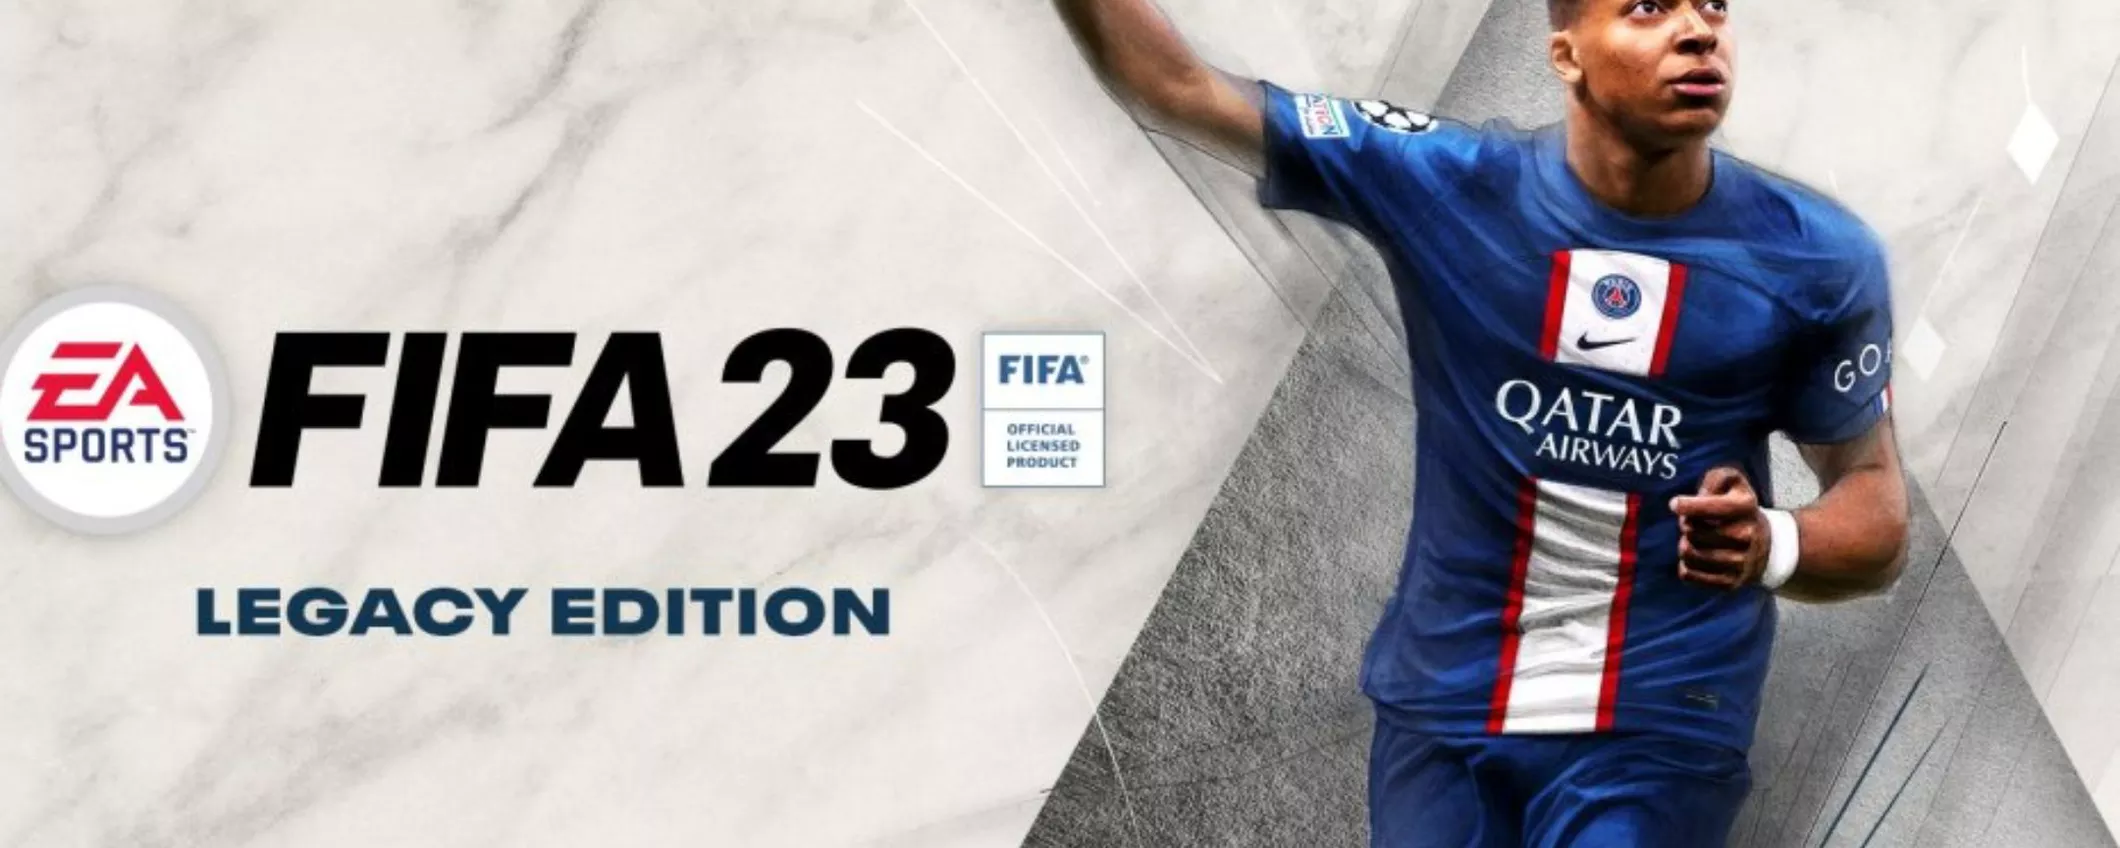 FIFA 23 Legacy Edition per Nintendo Switch a meno di 30 euro su Amazon